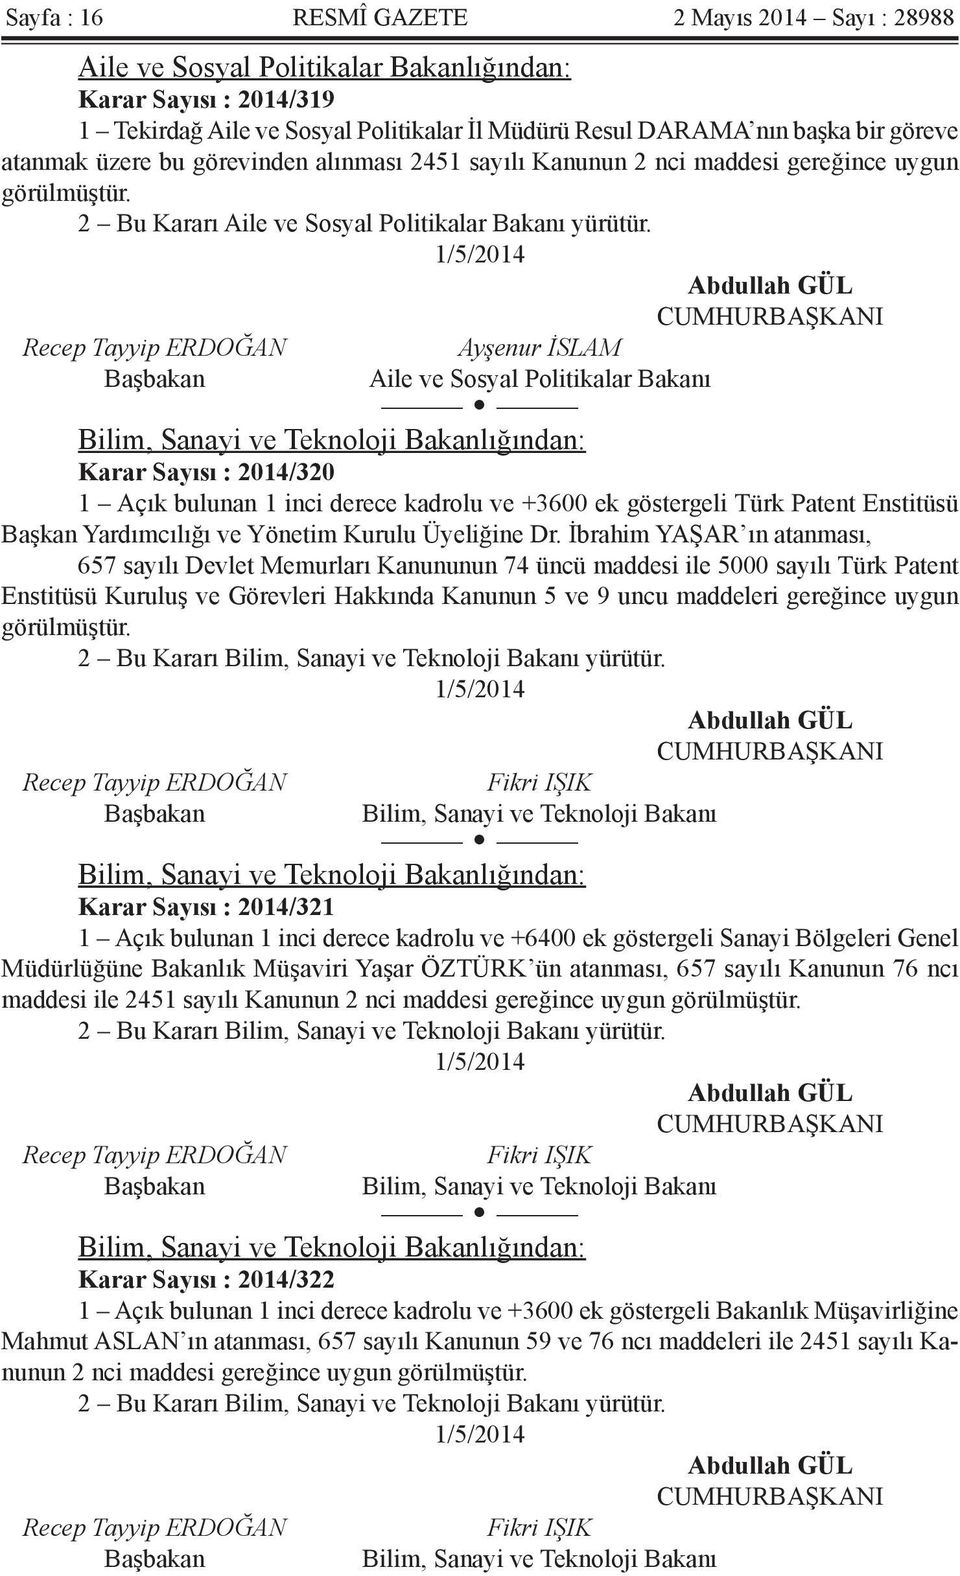 Ayşenur İSLAM Aile ve Sosyal Politikalar Bakanı Bilim, Sanayi ve Teknoloji Bakanlığından: Karar Sayısı : 2014/320 1 Açık bulunan 1 inci derece kadrolu ve +3600 ek göstergeli Türk Patent Enstitüsü